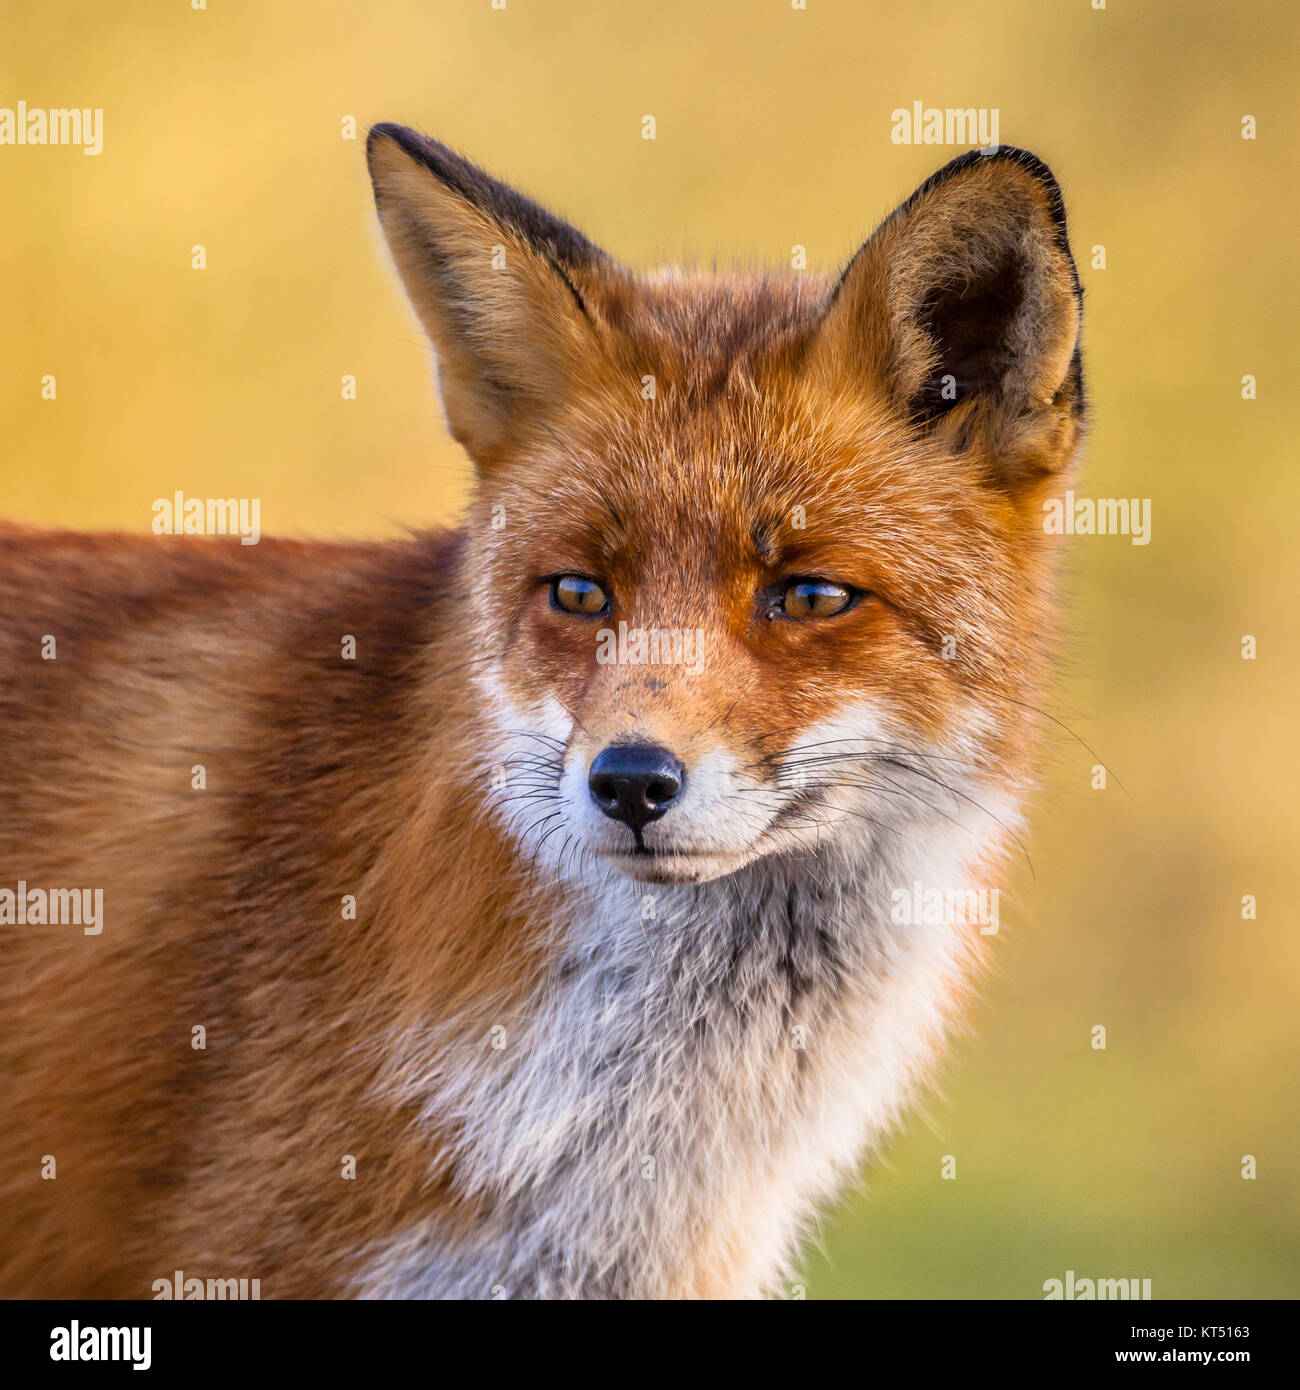 Ritratto di testa Red Fox maschio (Vulpes vulpes vulpes) in un ambiente naturale con sfondo giallo. Questo splendido animale selvatico del deserto. Look trinciatrice Foto Stock